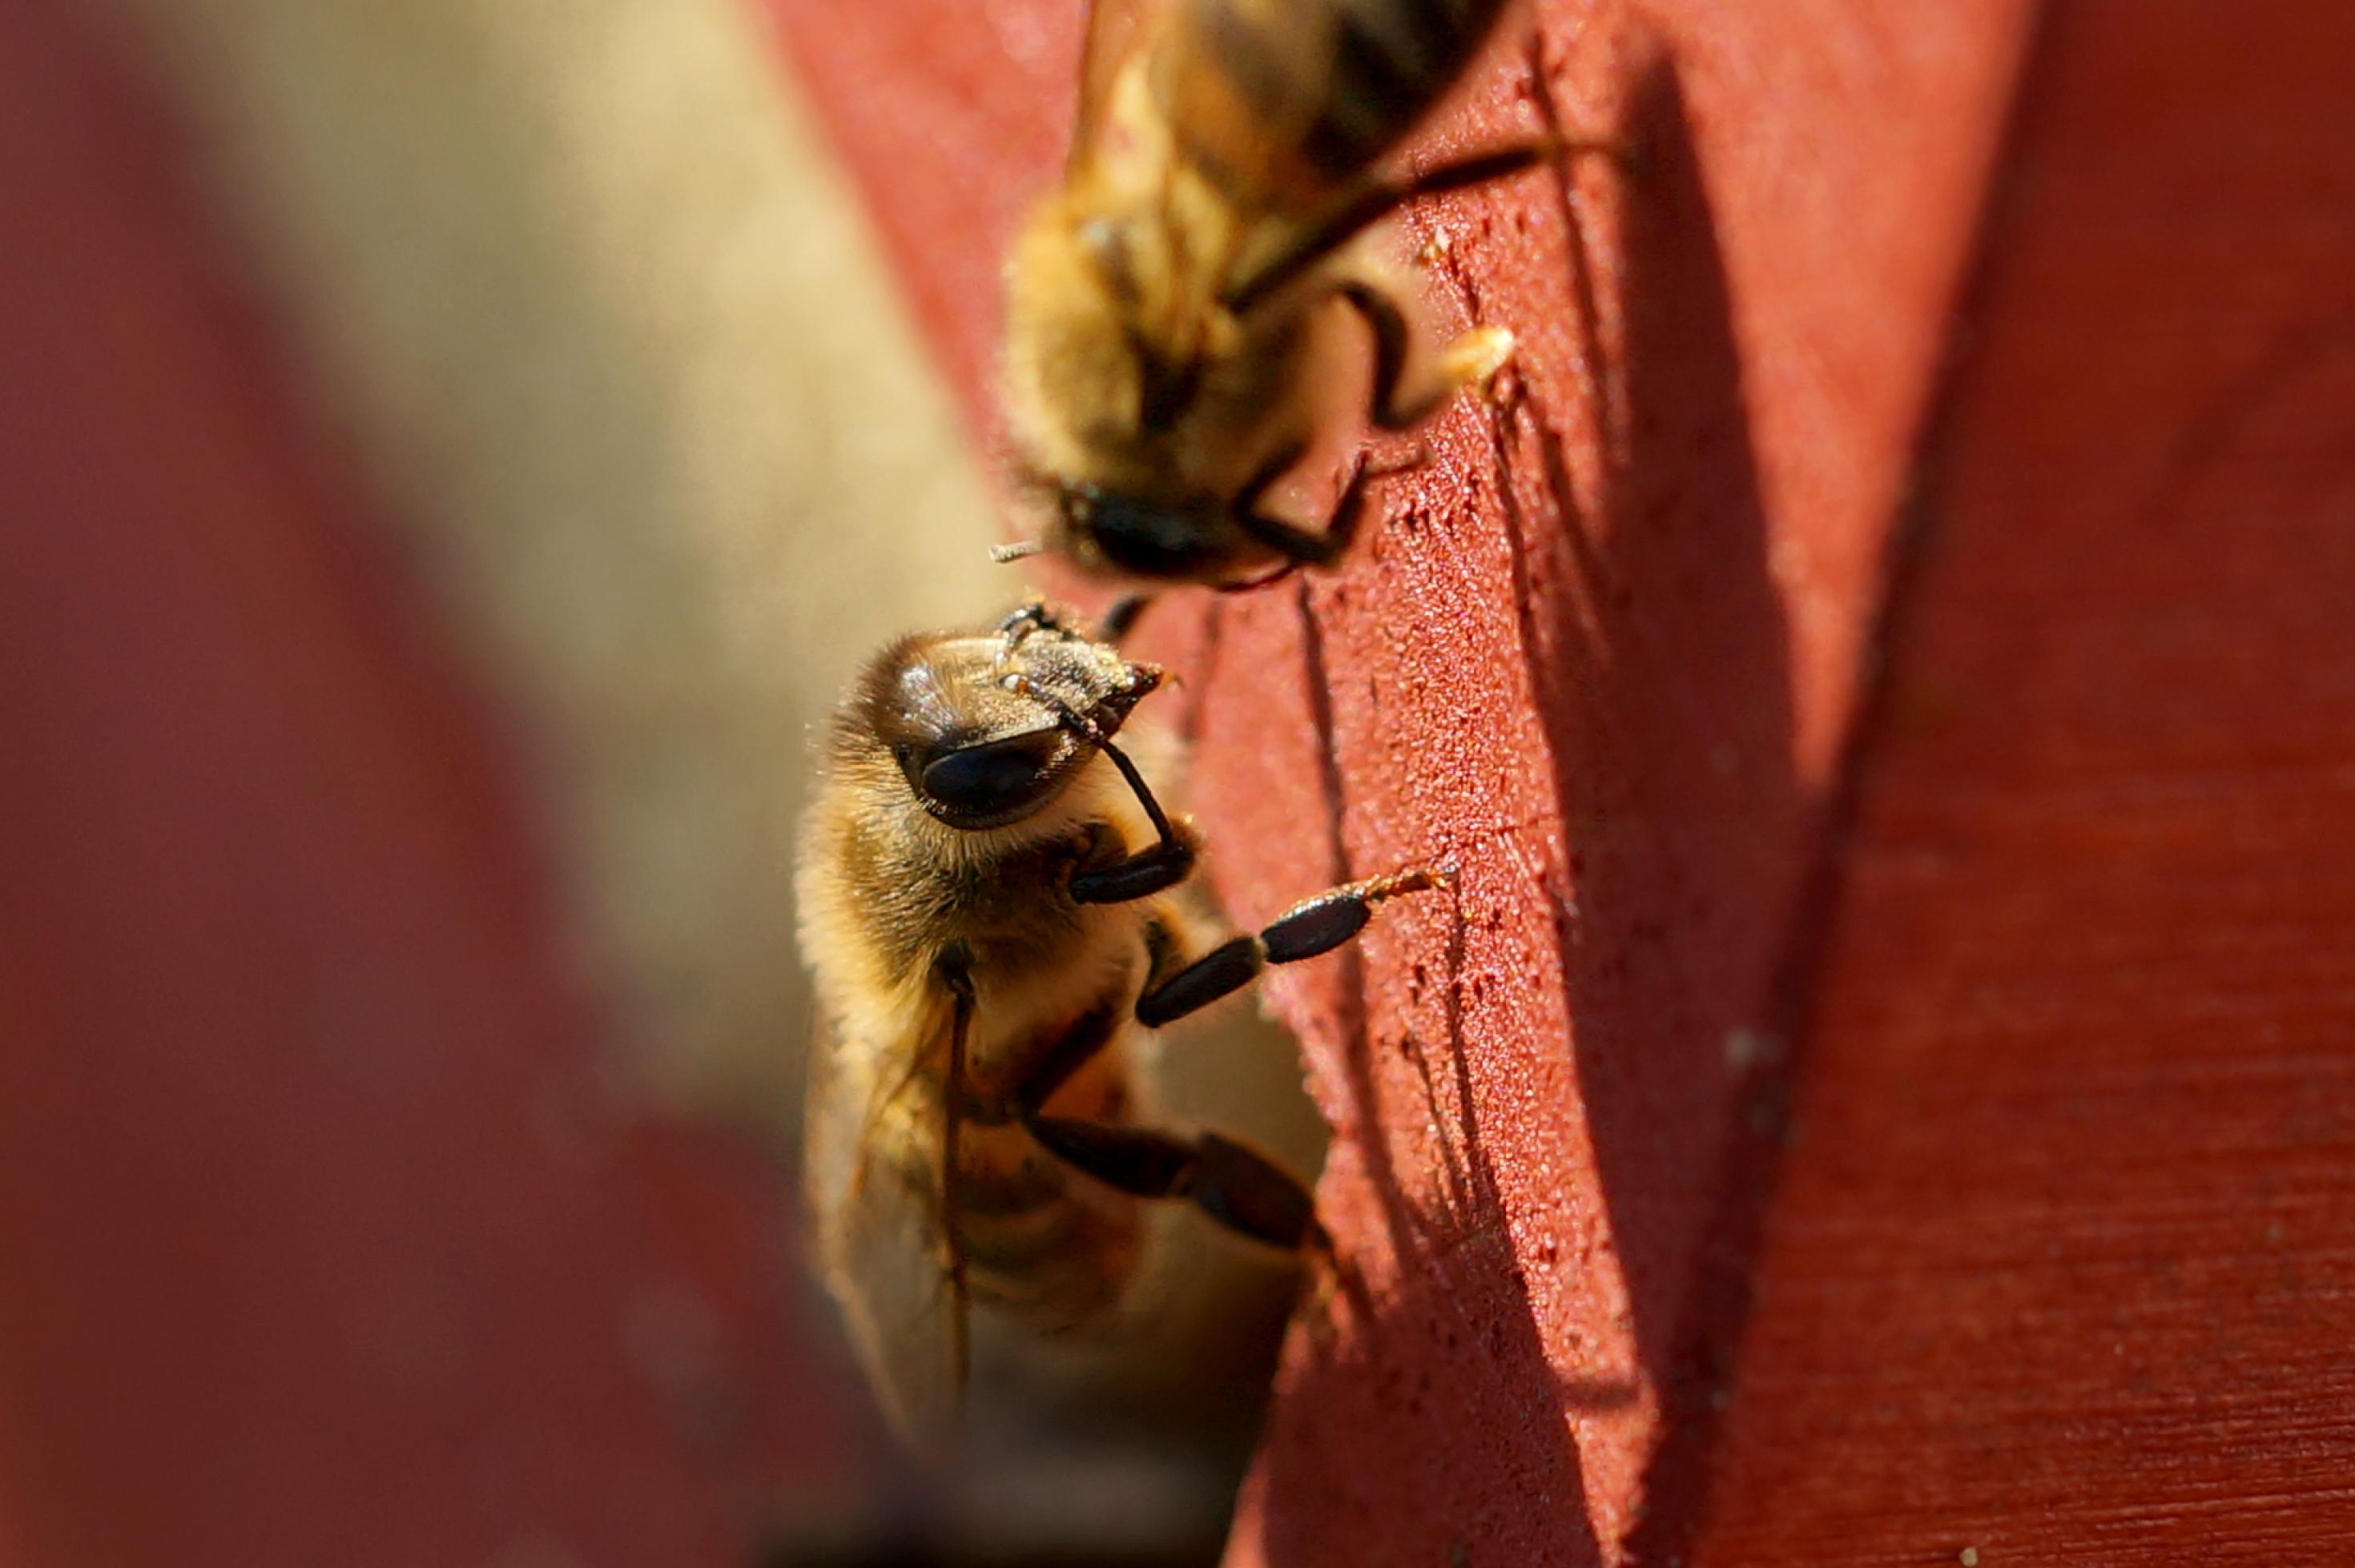 Eine Biene, in Großaufnahme, sitzt am Rand Flugloch eines braun gestrichenen Bienenhauses. Mit den zwei vorderen Gliedmaßen fährt sich gerade über den Kopf.